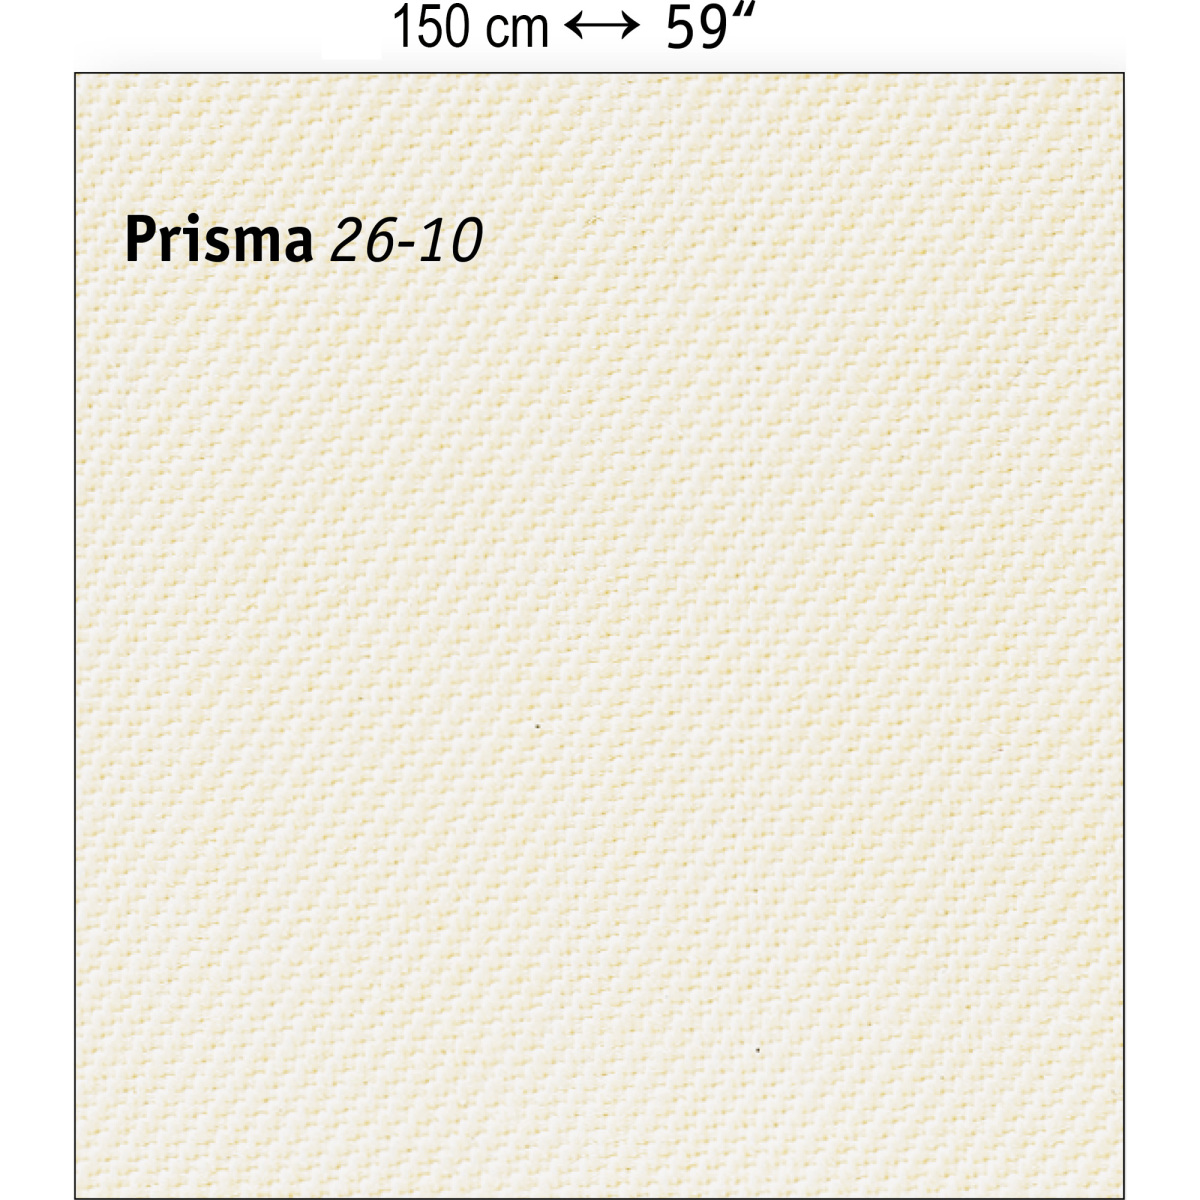 206-PRISMA26-10-inch_cm-2000x2000pix-KW10-MR1